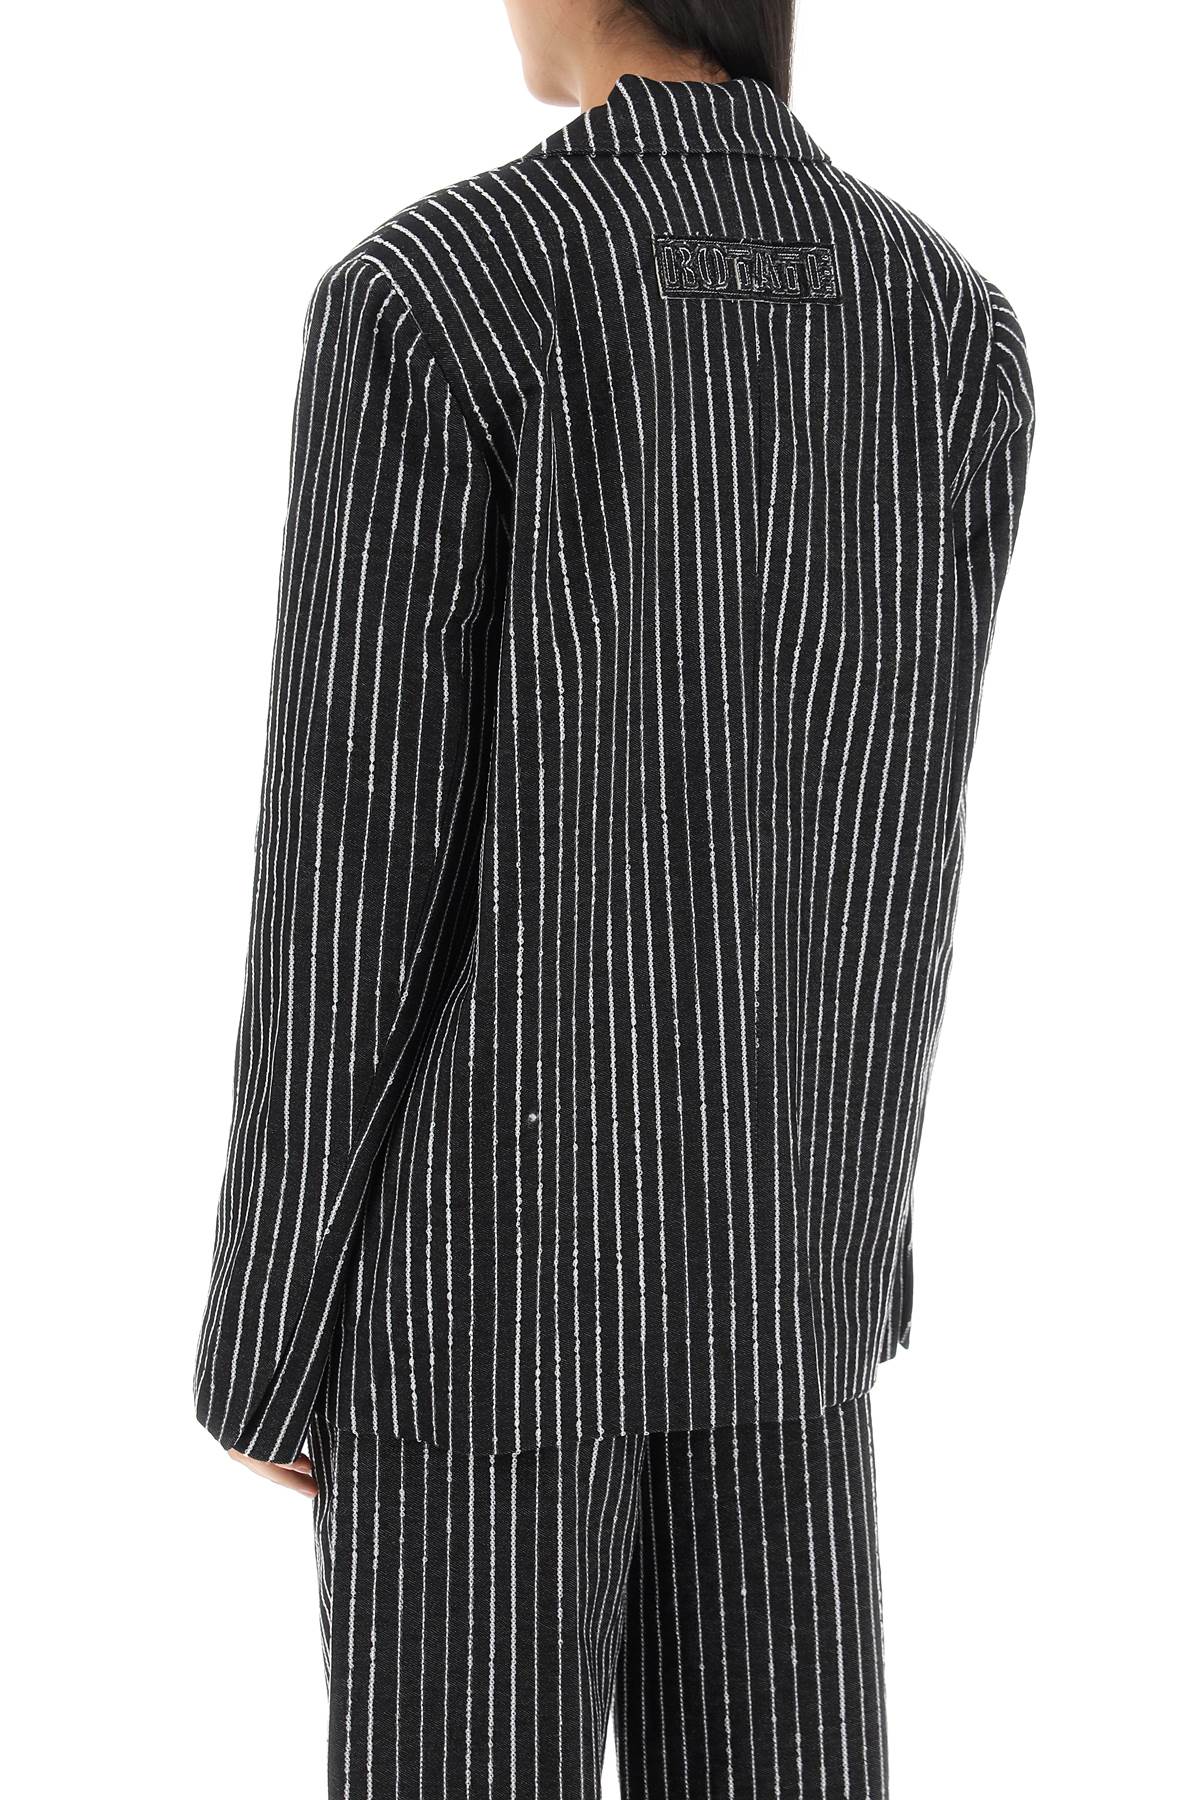 Shop Rotate Birger Christensen Blazer With Sequined Stripes In Black